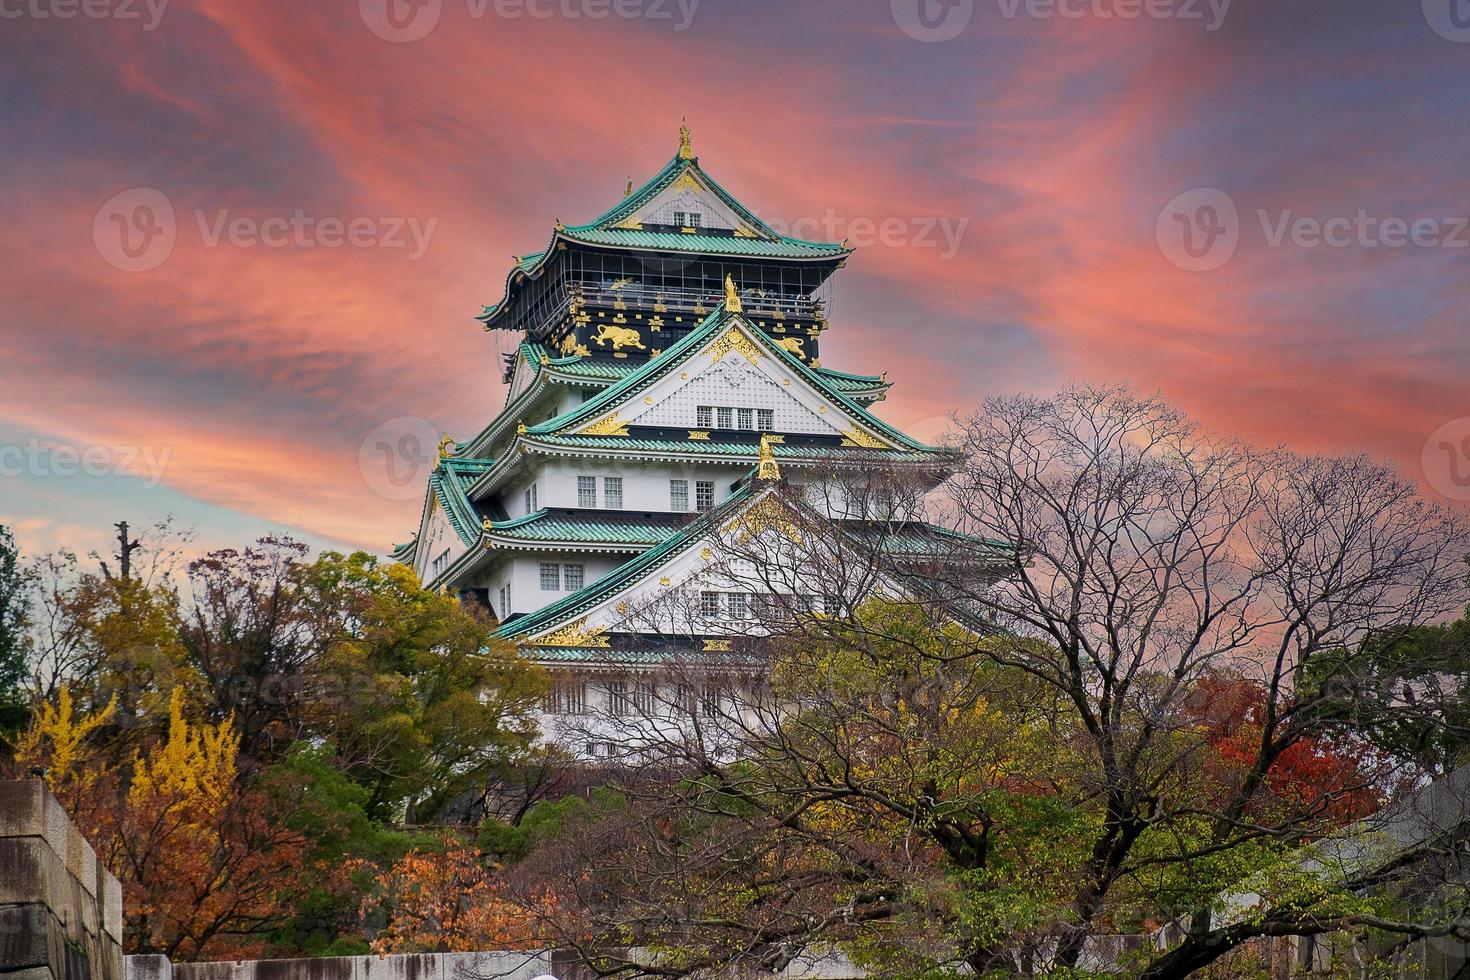 el castillo de osaka en la temporada de follaje otoñal, es un famoso castillo japonés, punto de referencia y popular para las atracciones turísticas en osaka, kansai, japón foto